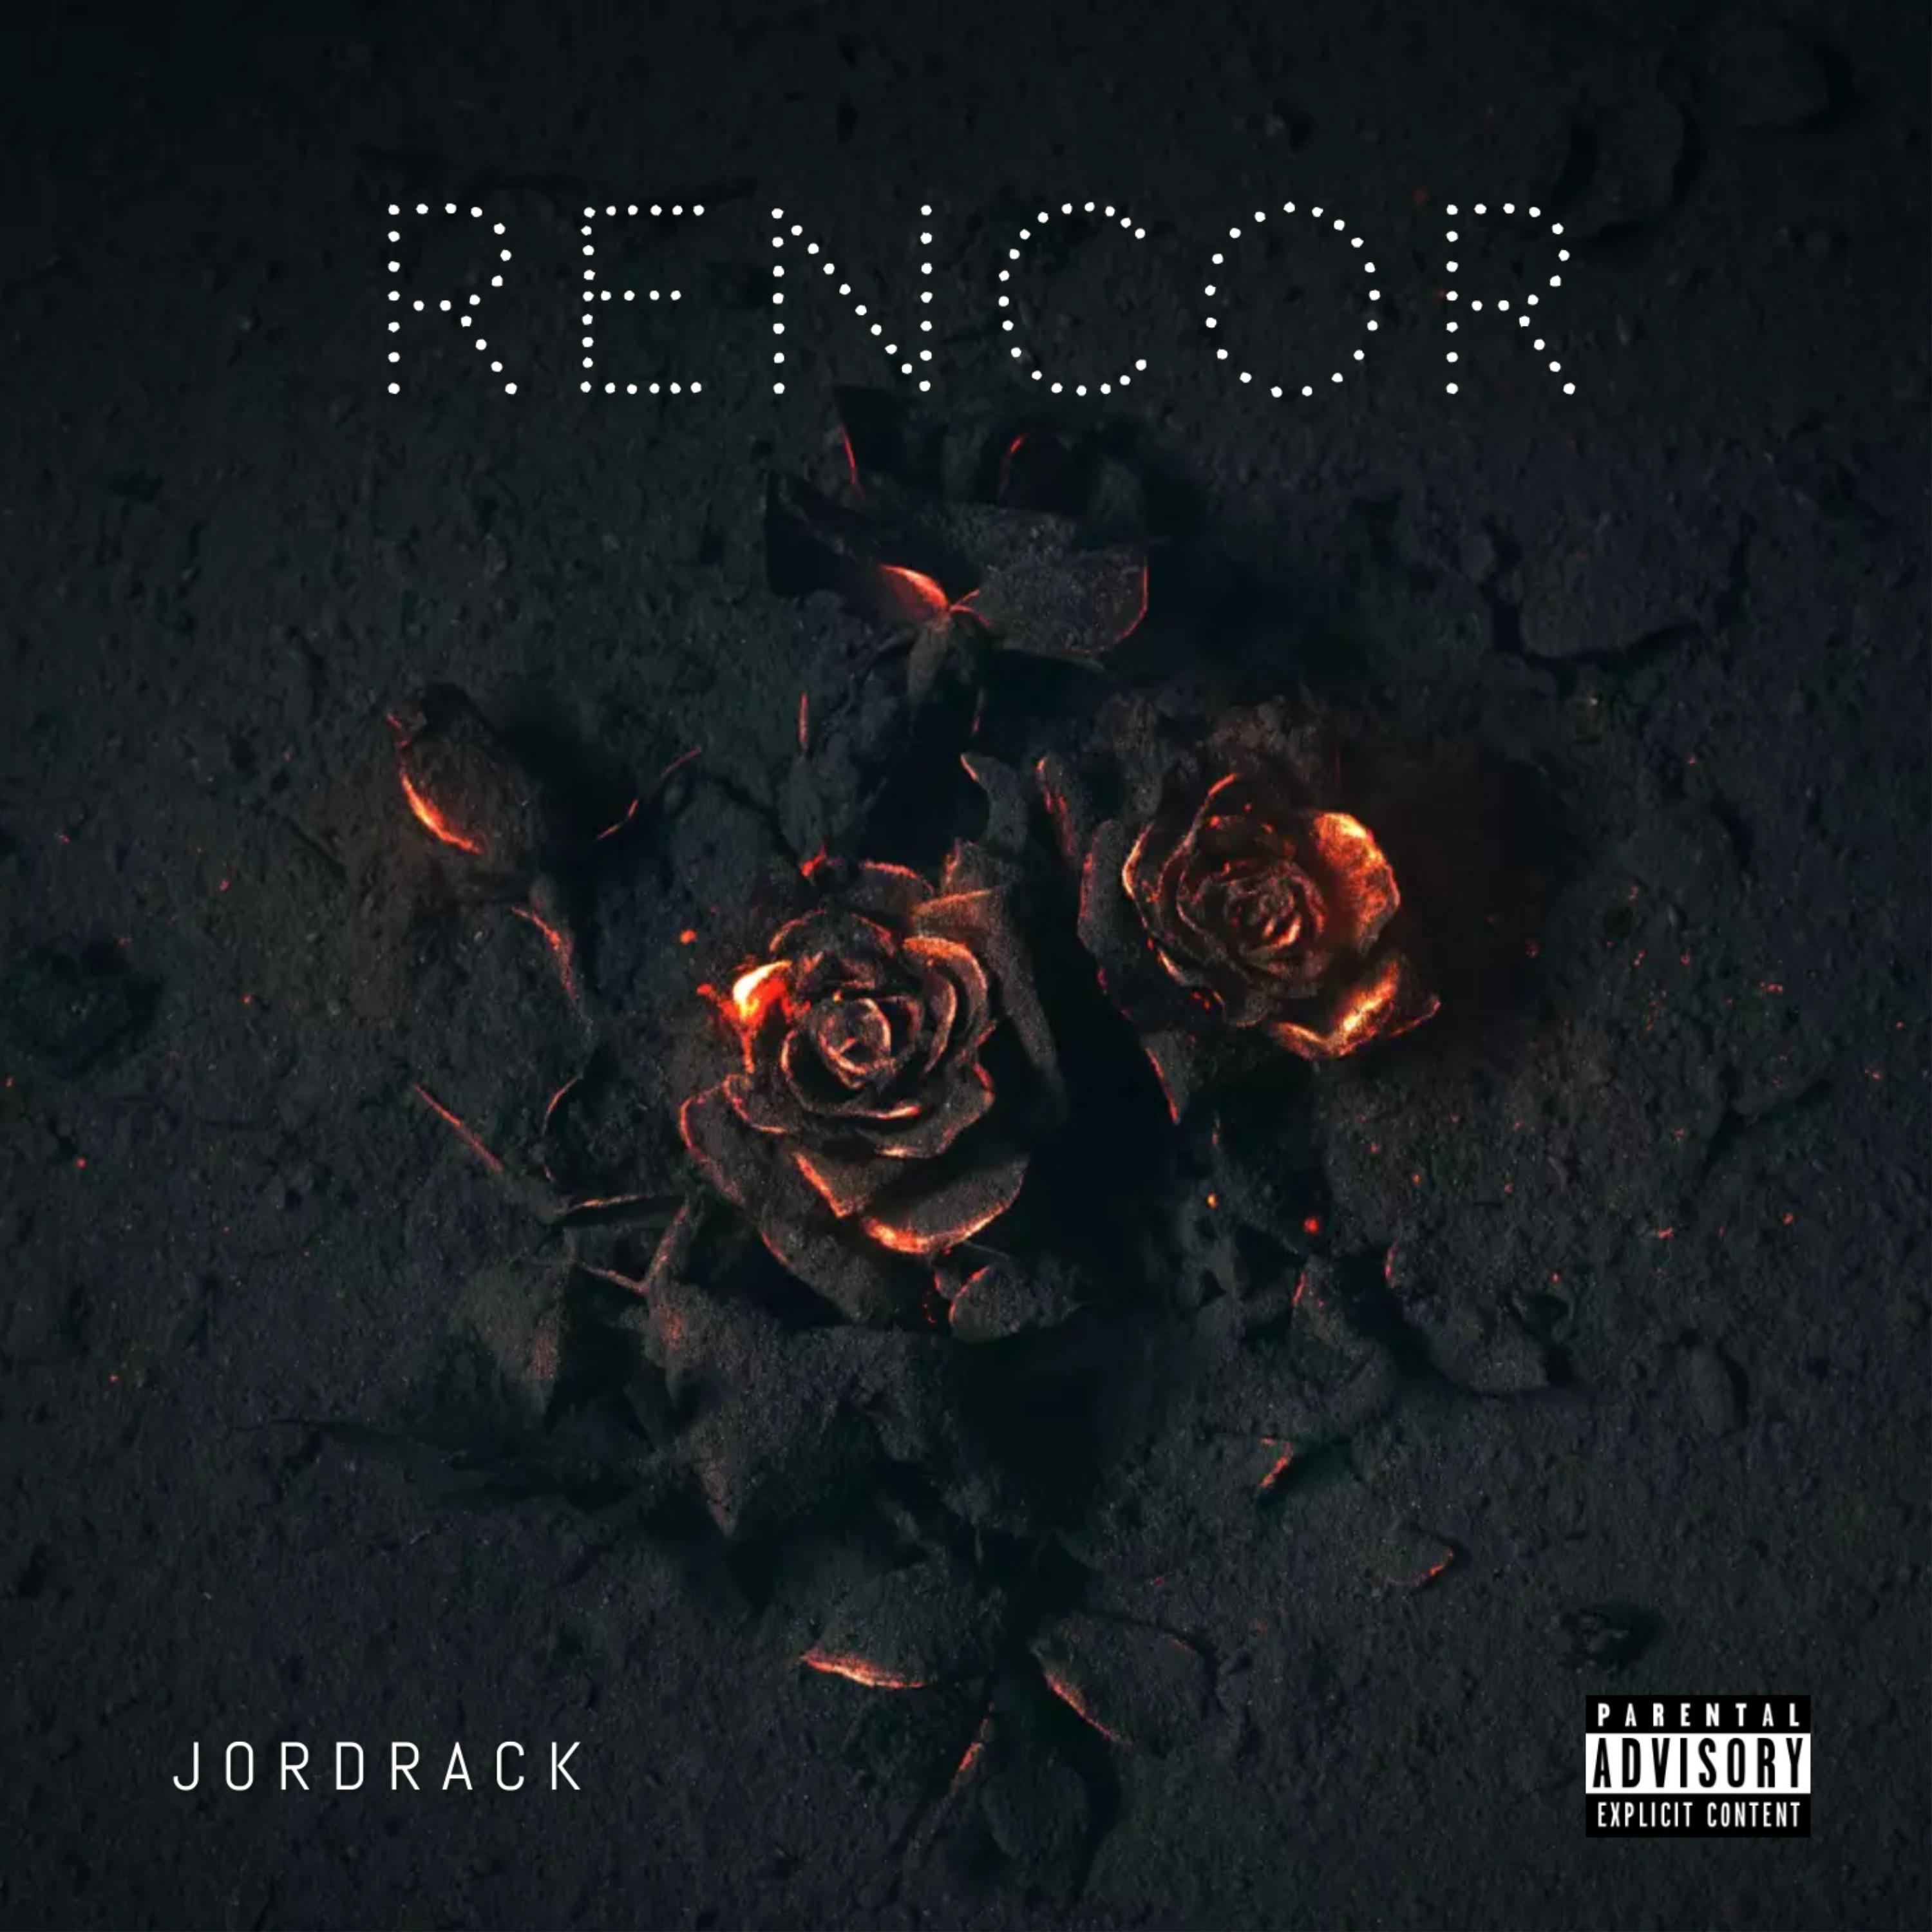 Постер альбома Rencor